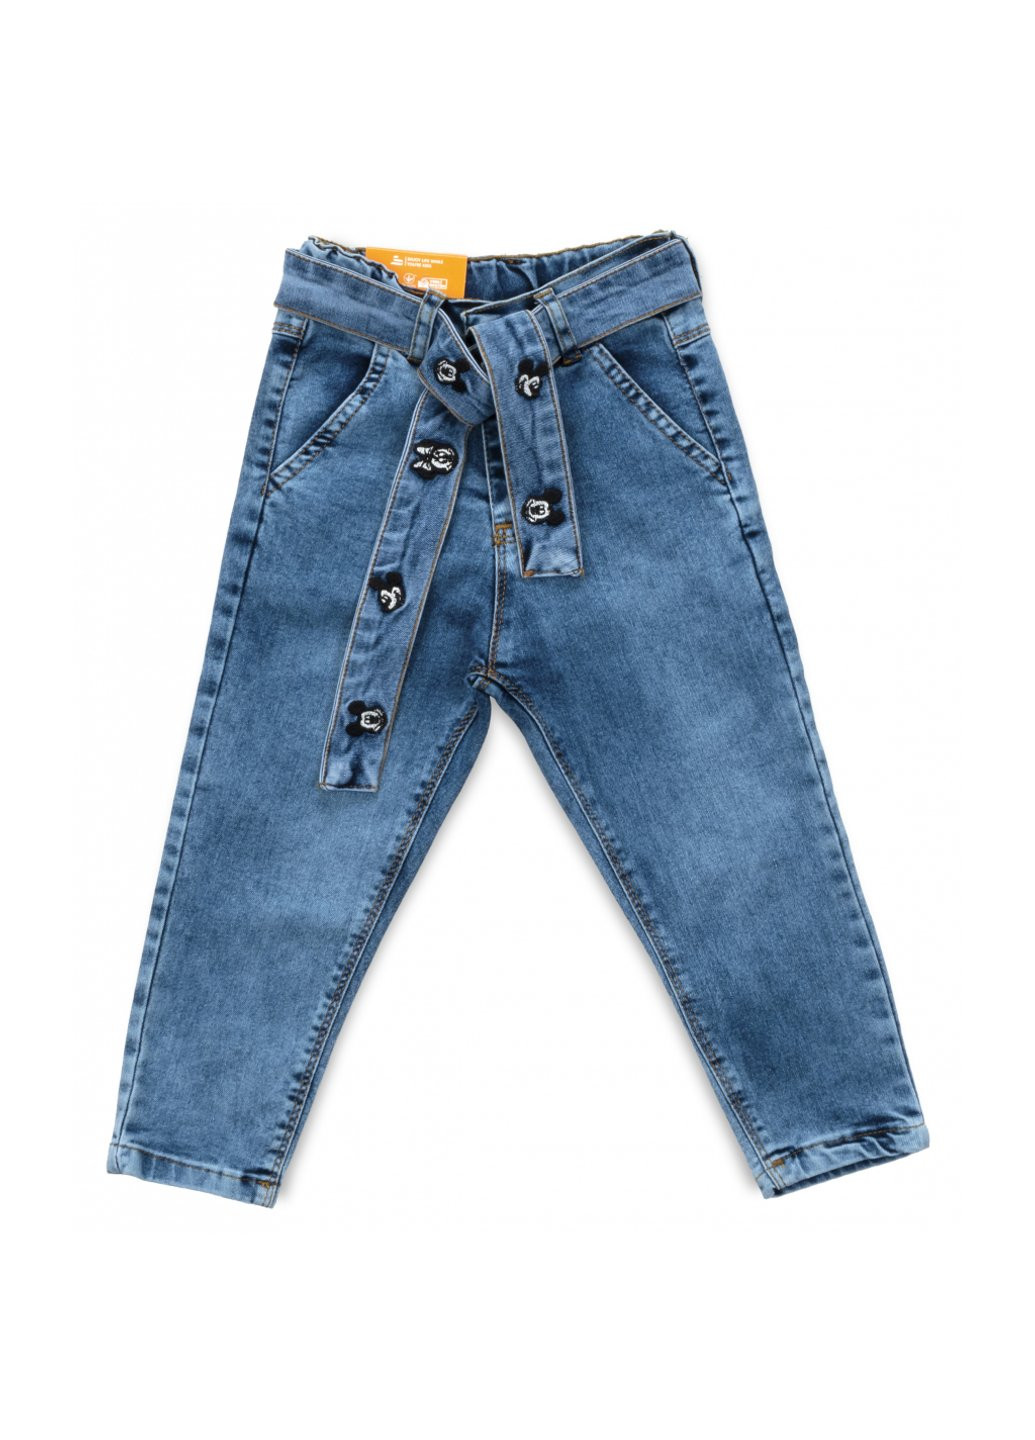 Голубые демисезонные джинсы с поясом (58162-98g-blue) Sercino